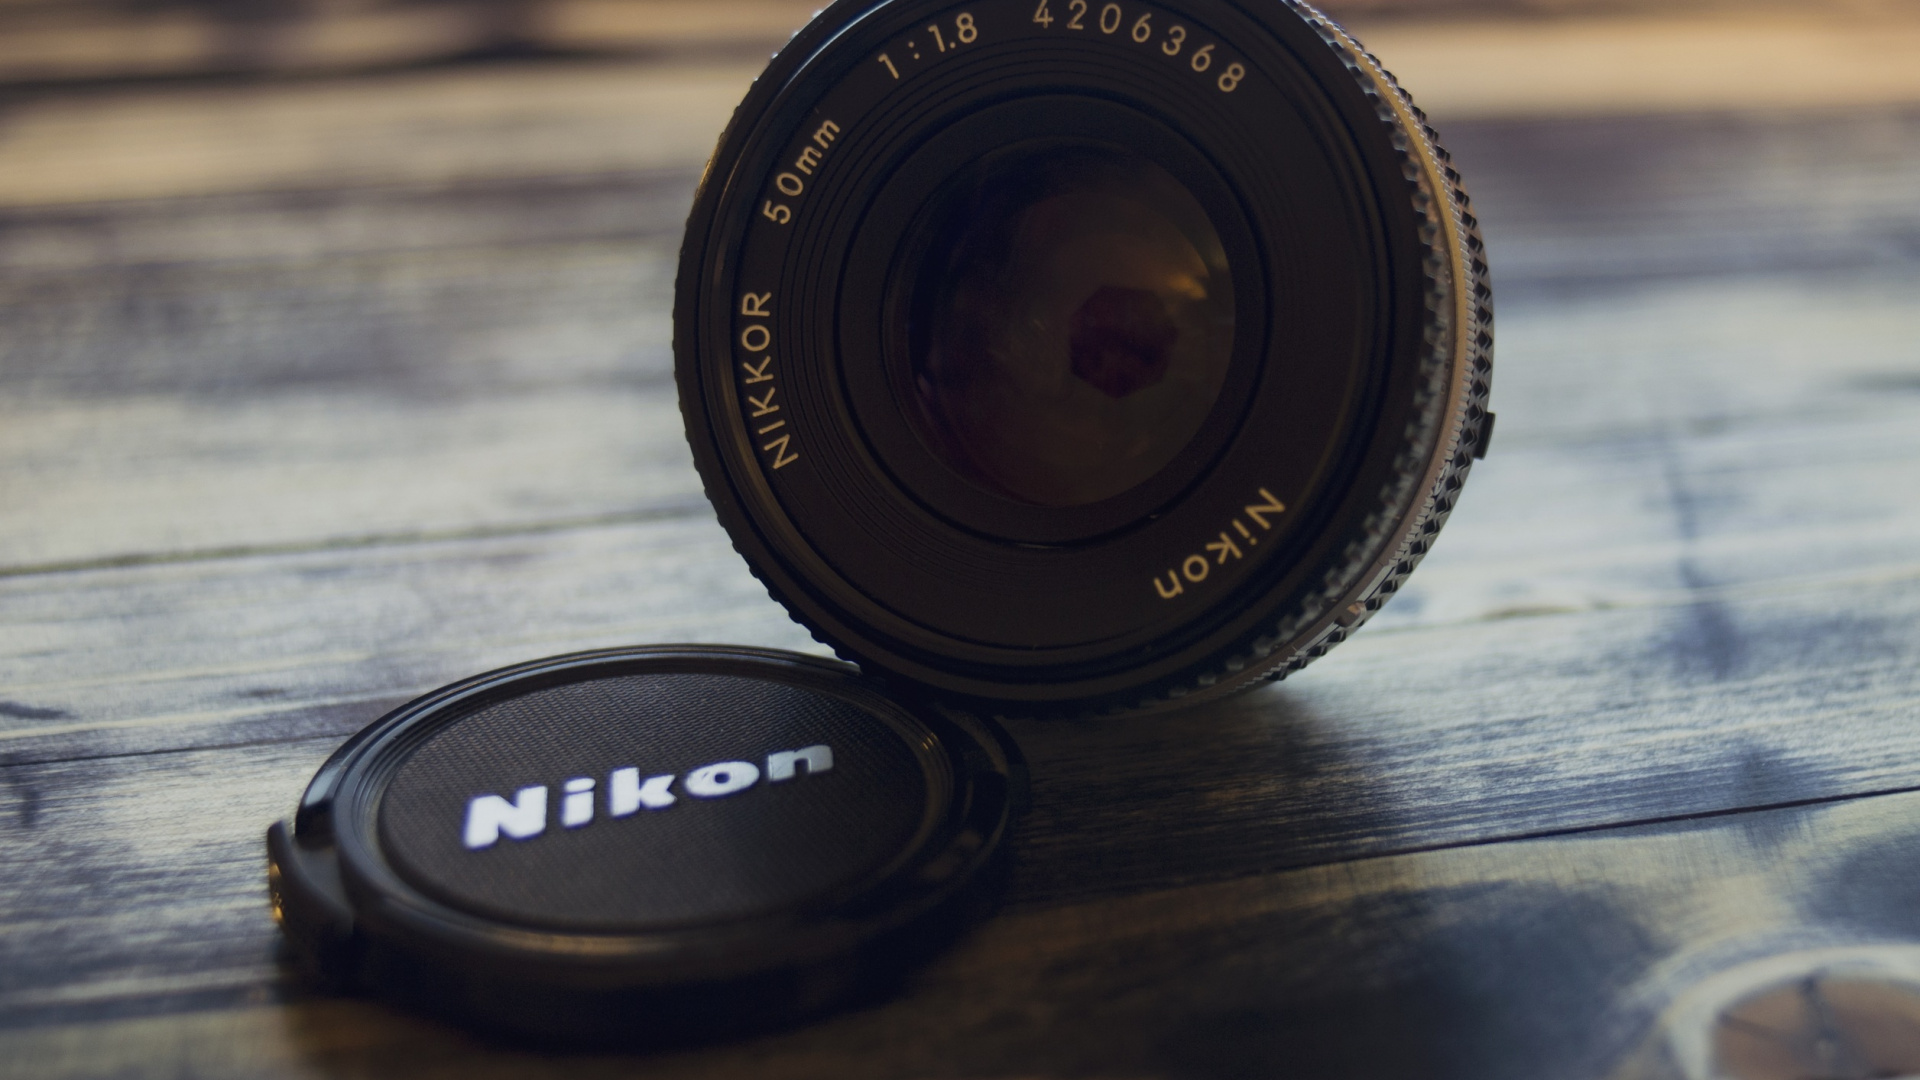 Objectif de L'appareil Photo Nikon Noir Sur Une Table en Bois Marron. Wallpaper in 1920x1080 Resolution